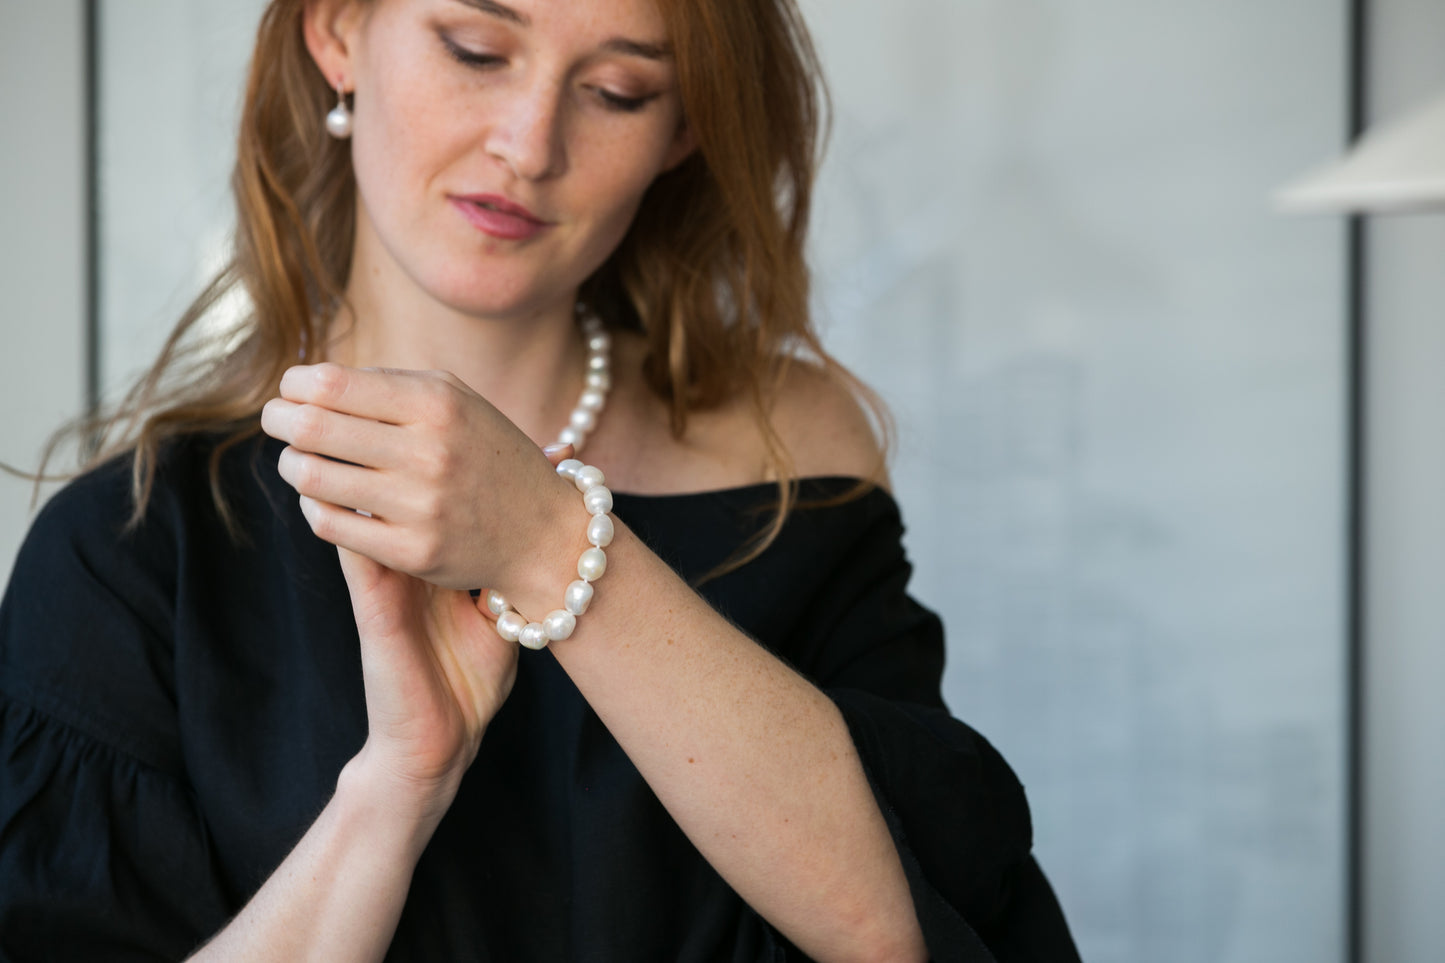 Gratia large cultured freshwater pearl necklace and cultured freshwater pearl bracelet